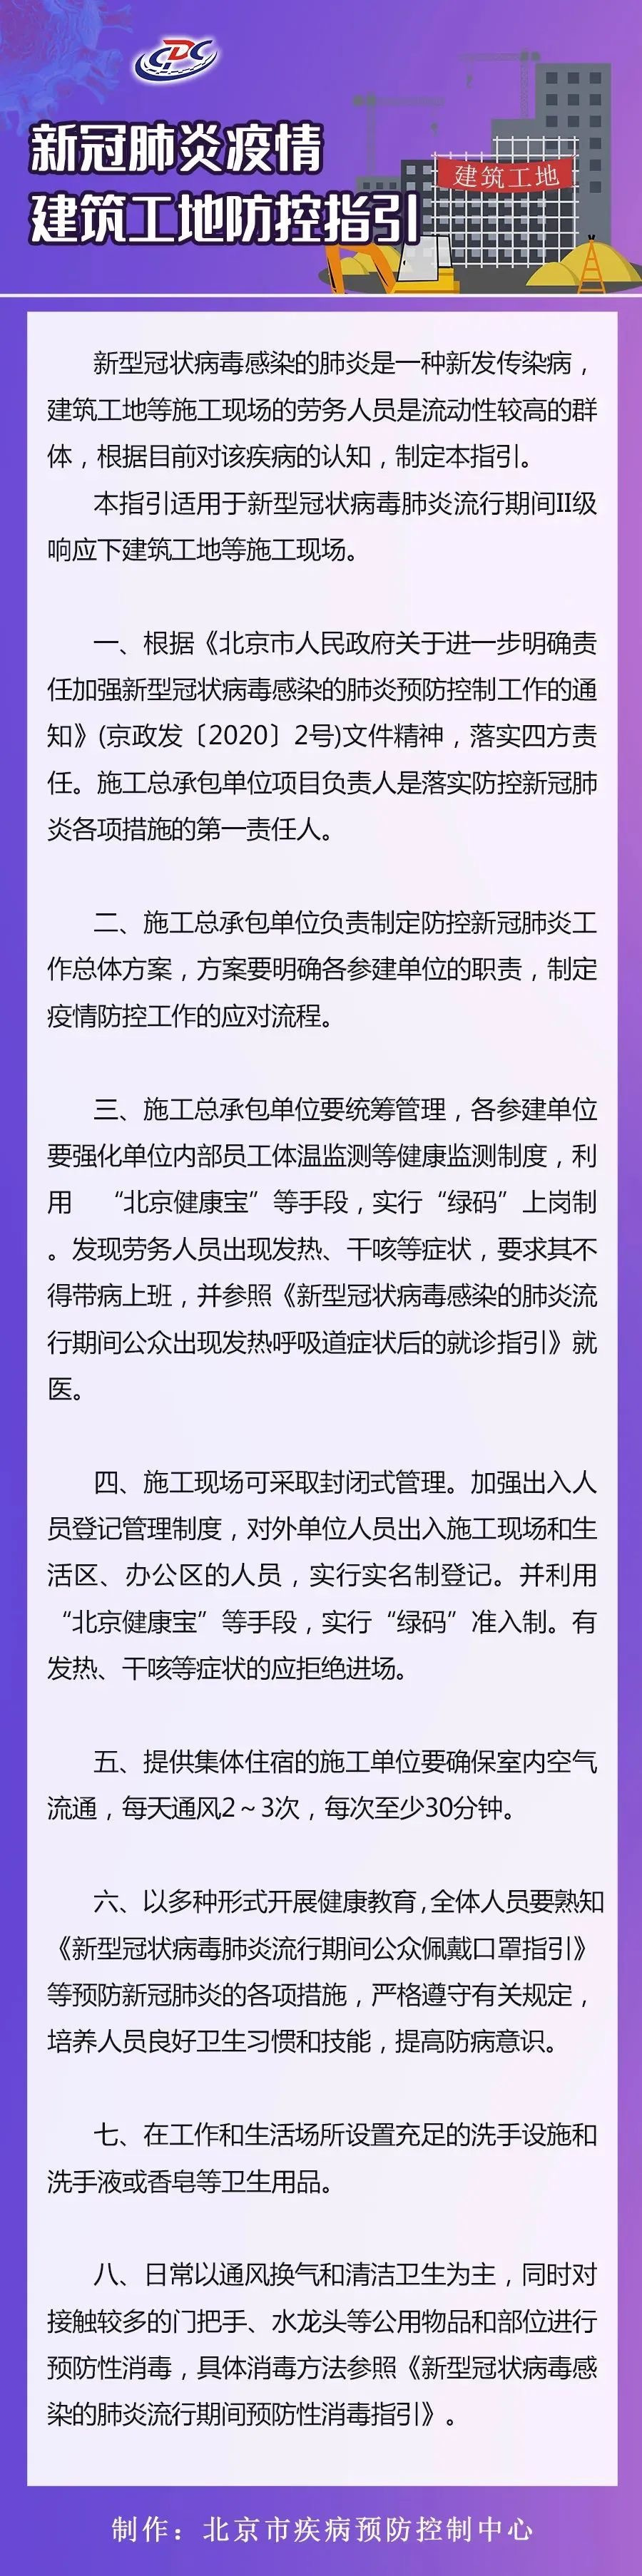 北京发布建筑工地防控指引:施工现场可封闭管理、实名制登记